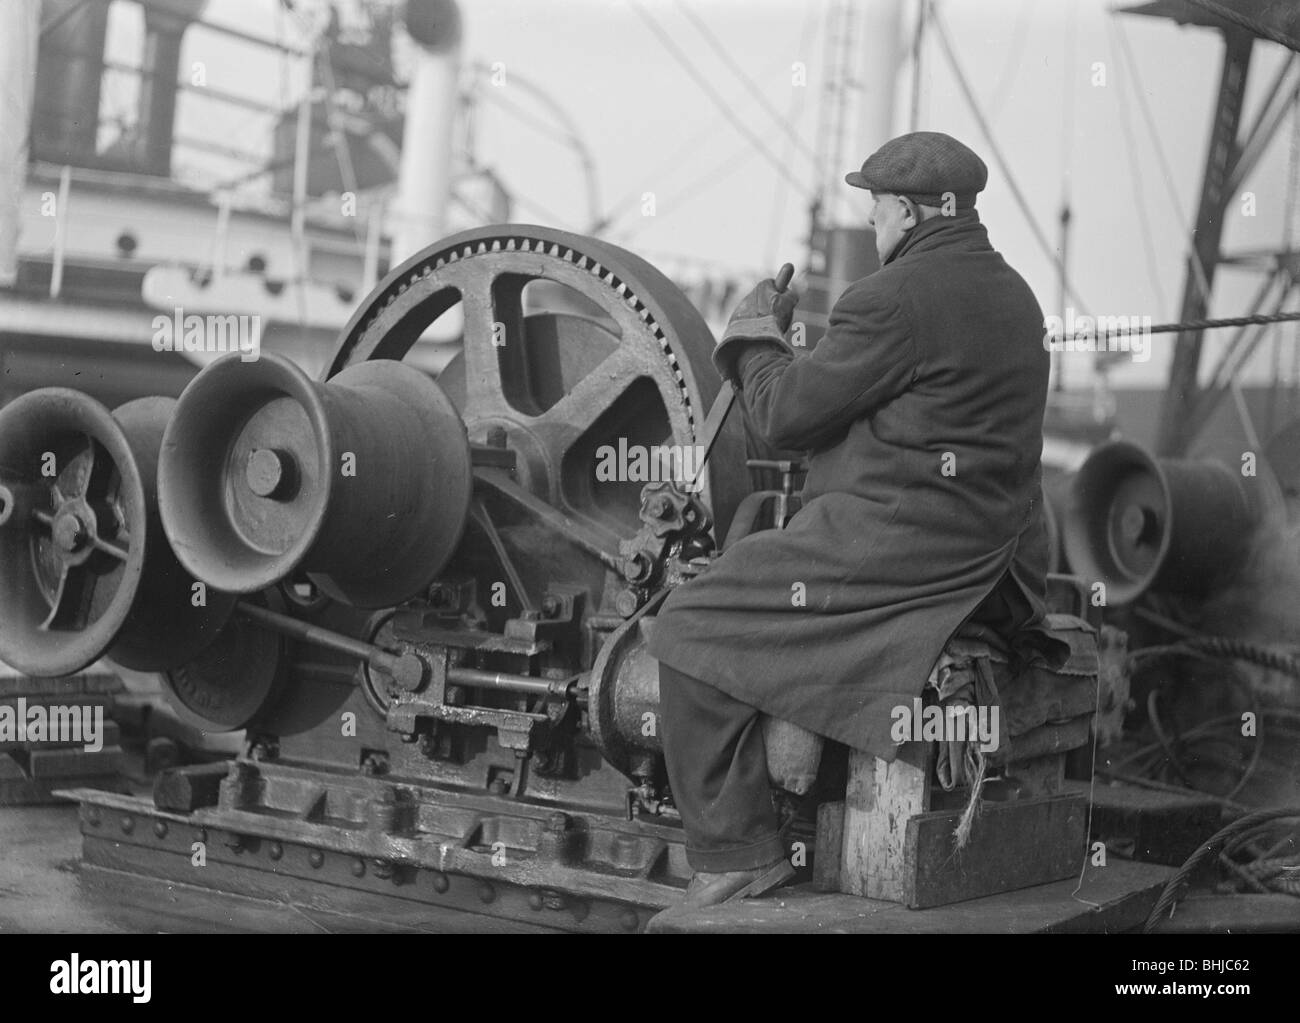 A docker operates a winching gear in London Docks, London, c1945-c1965.  Artist: SW Rawlings Stock Photo